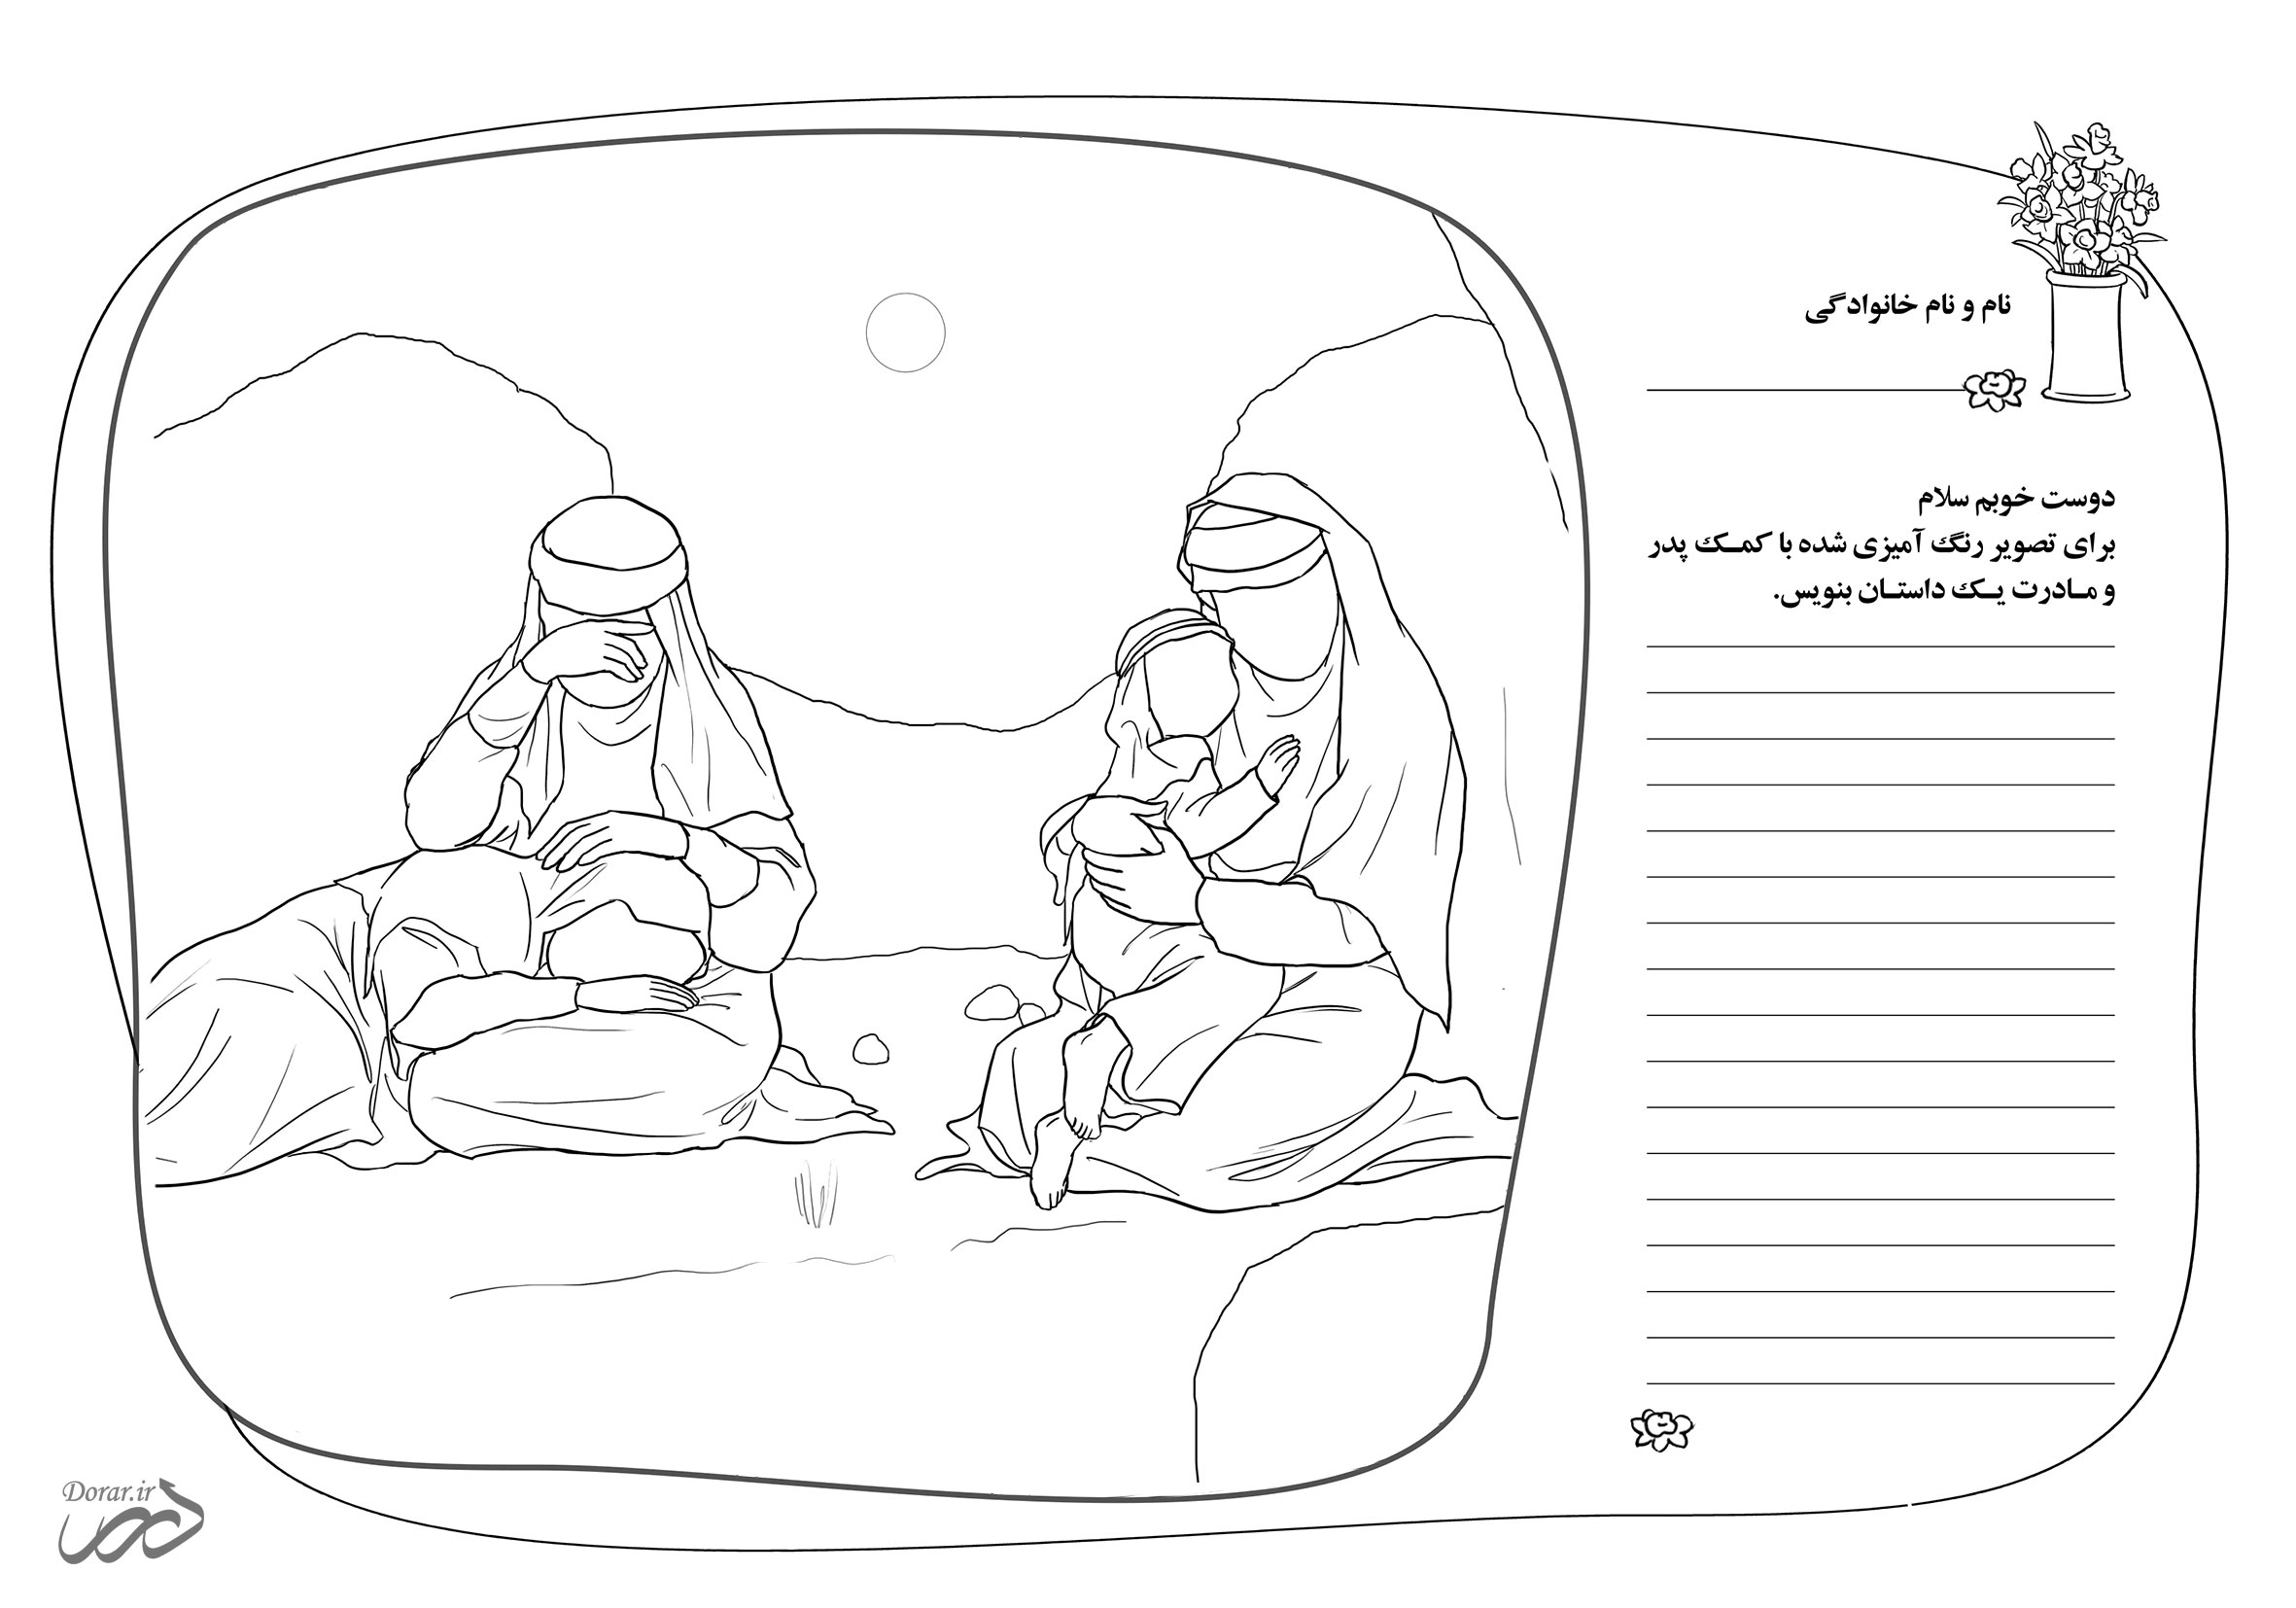 نقاشی کودکانه با موضوع محرم | اهل بیت امام حسین